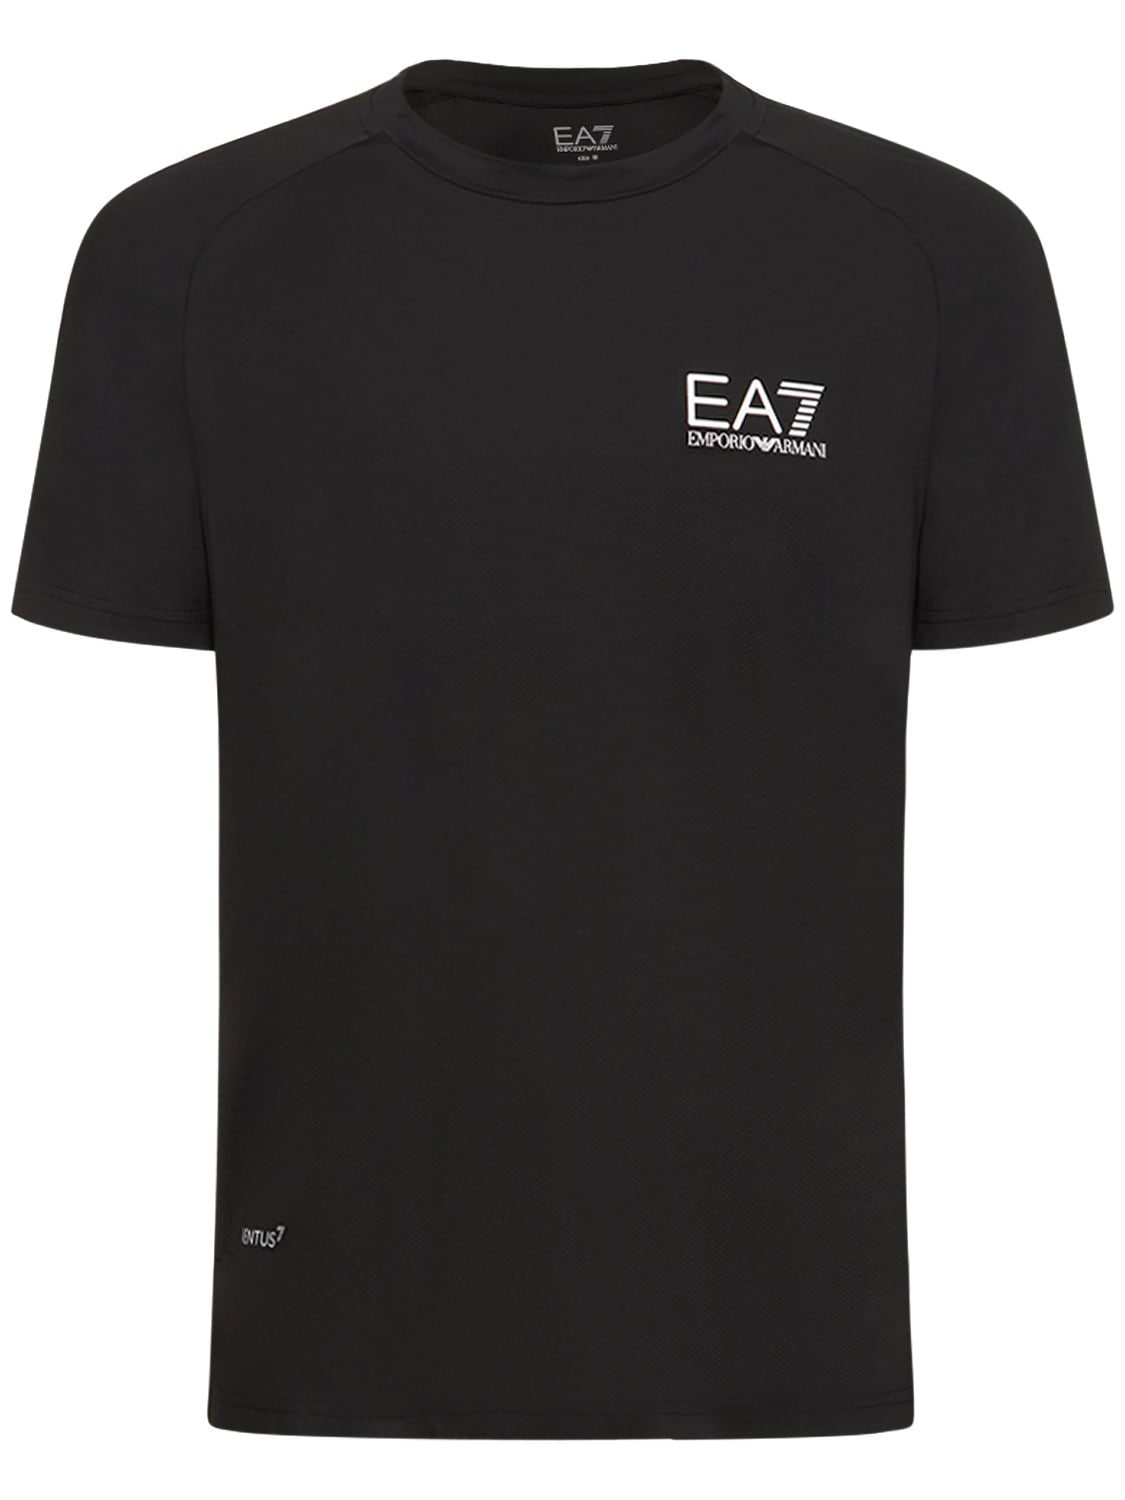 T-shirt En Jersey Tech Ventus7 Tennis Pro - EA7 EMPORIO ARMANI - Modalova